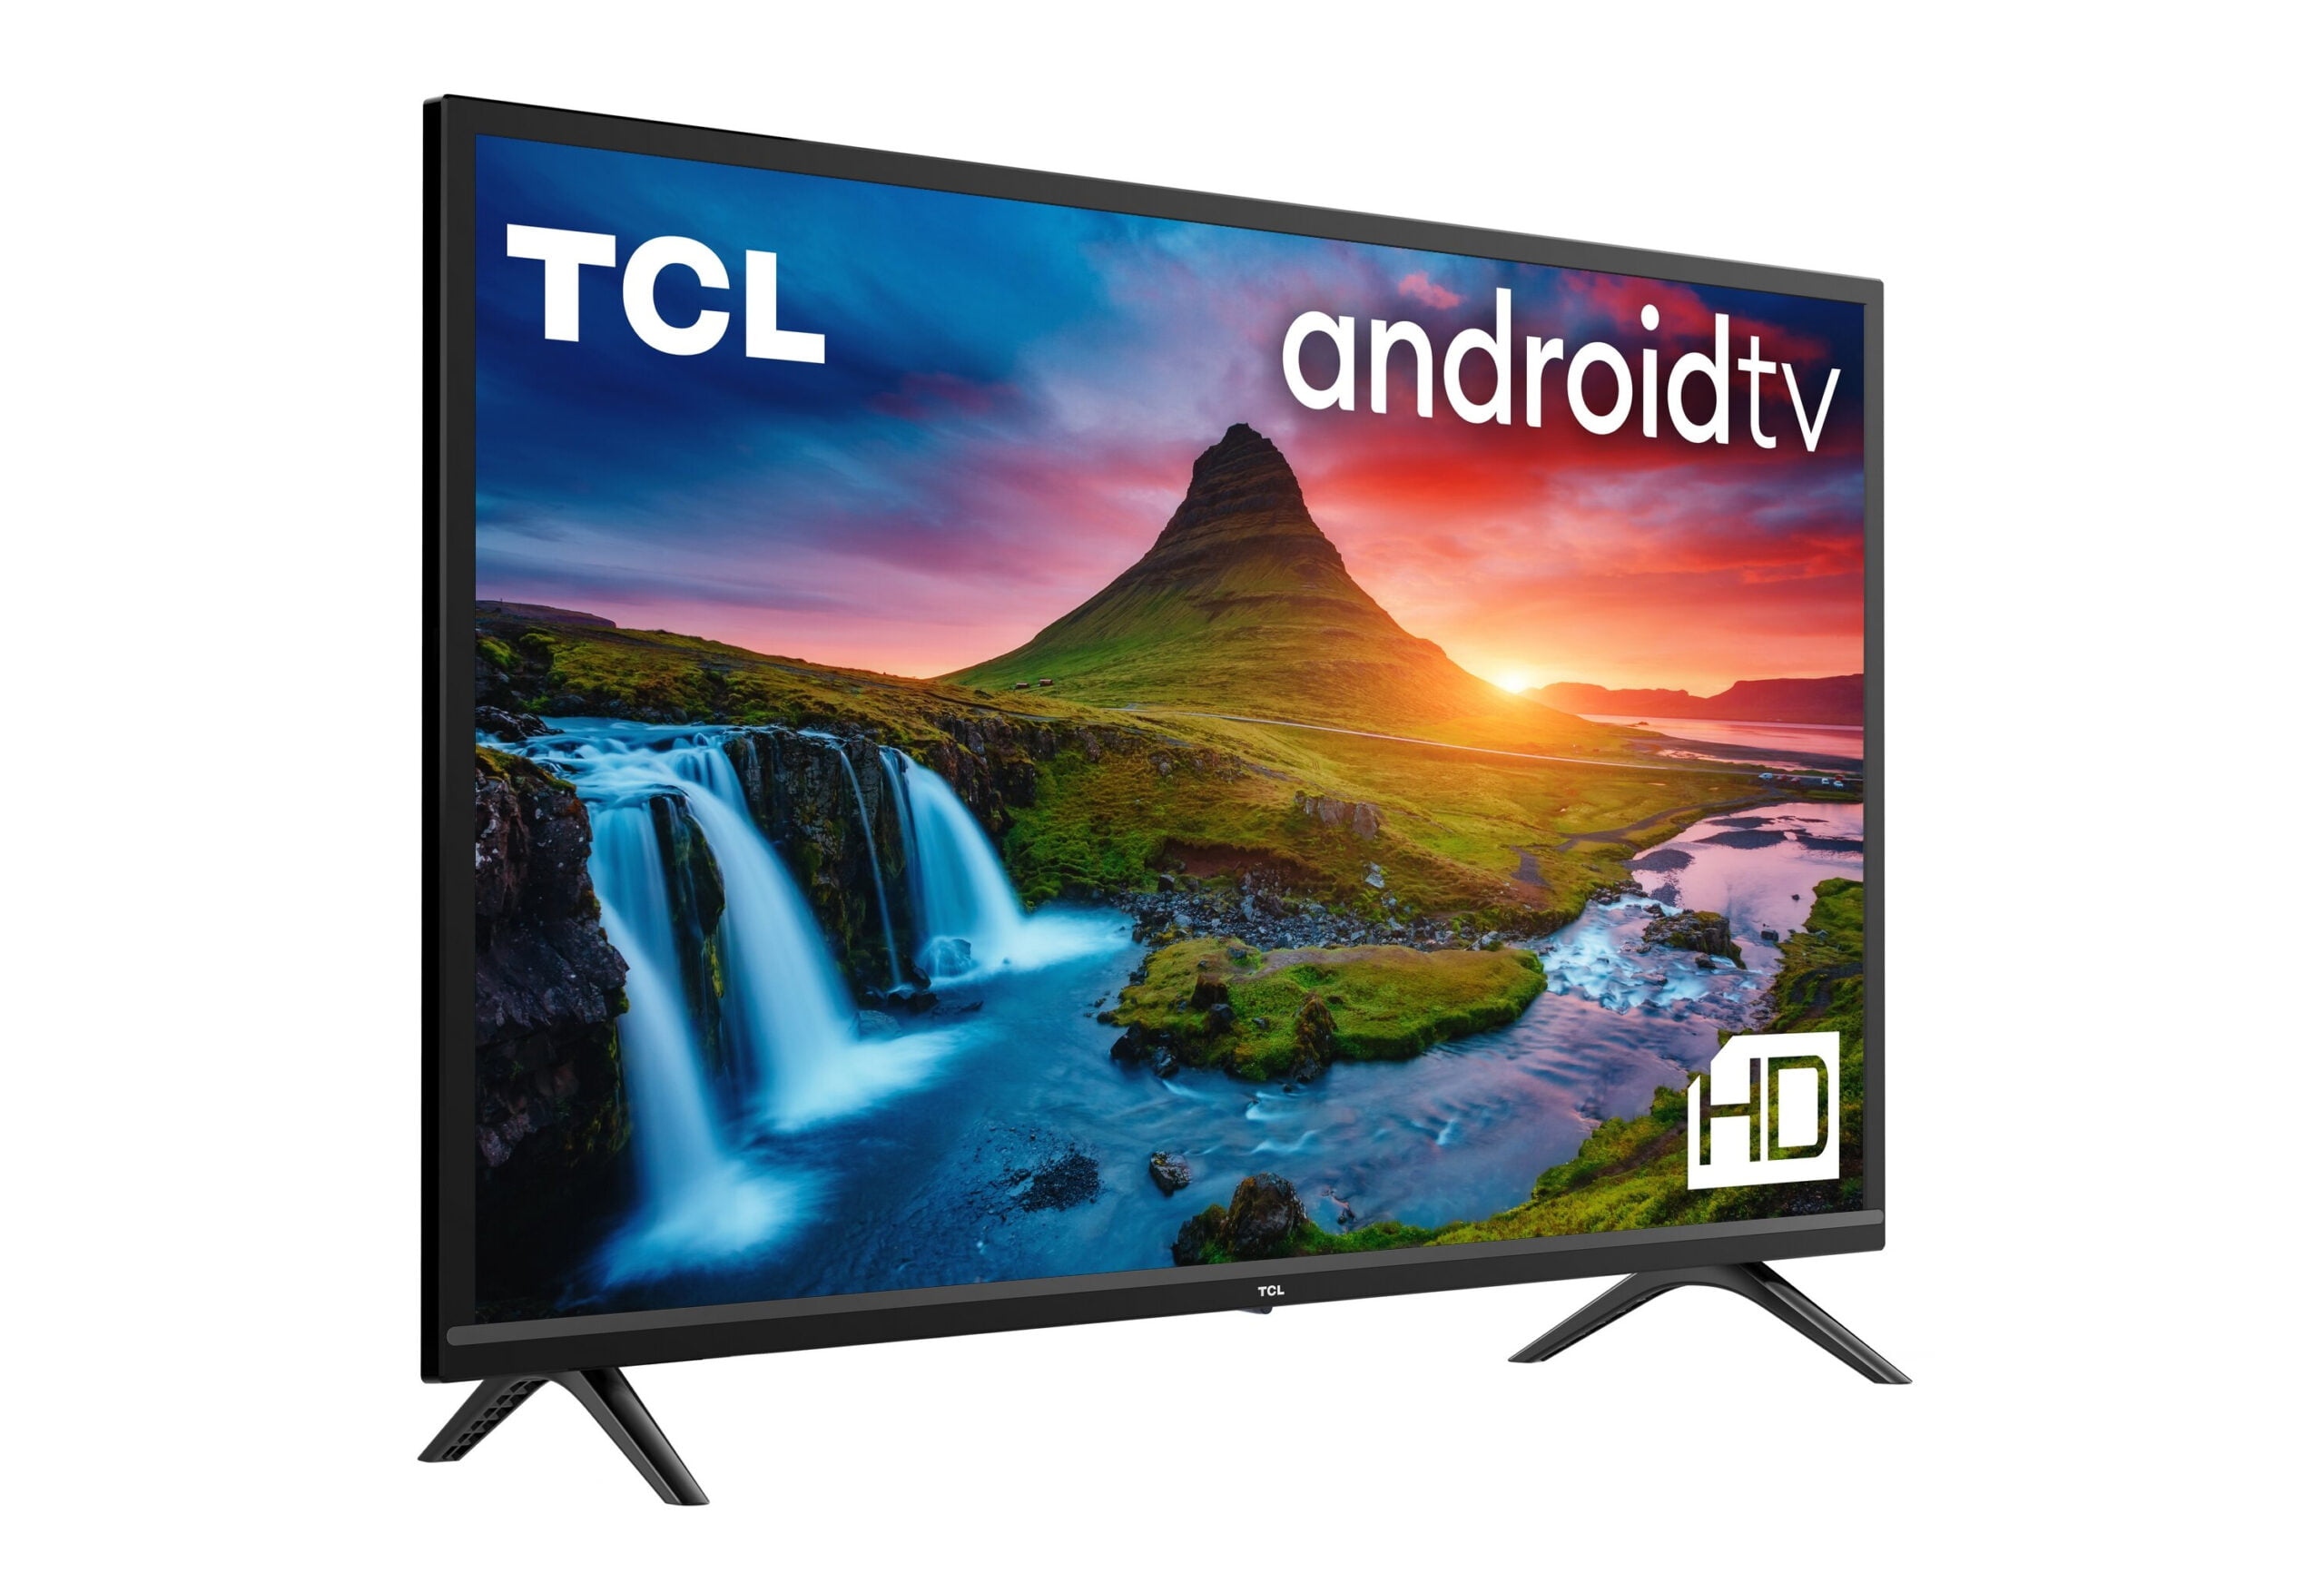 Telewizor TCL Android TV HD z krajobrazem przedstawiającym górę i wodospad.